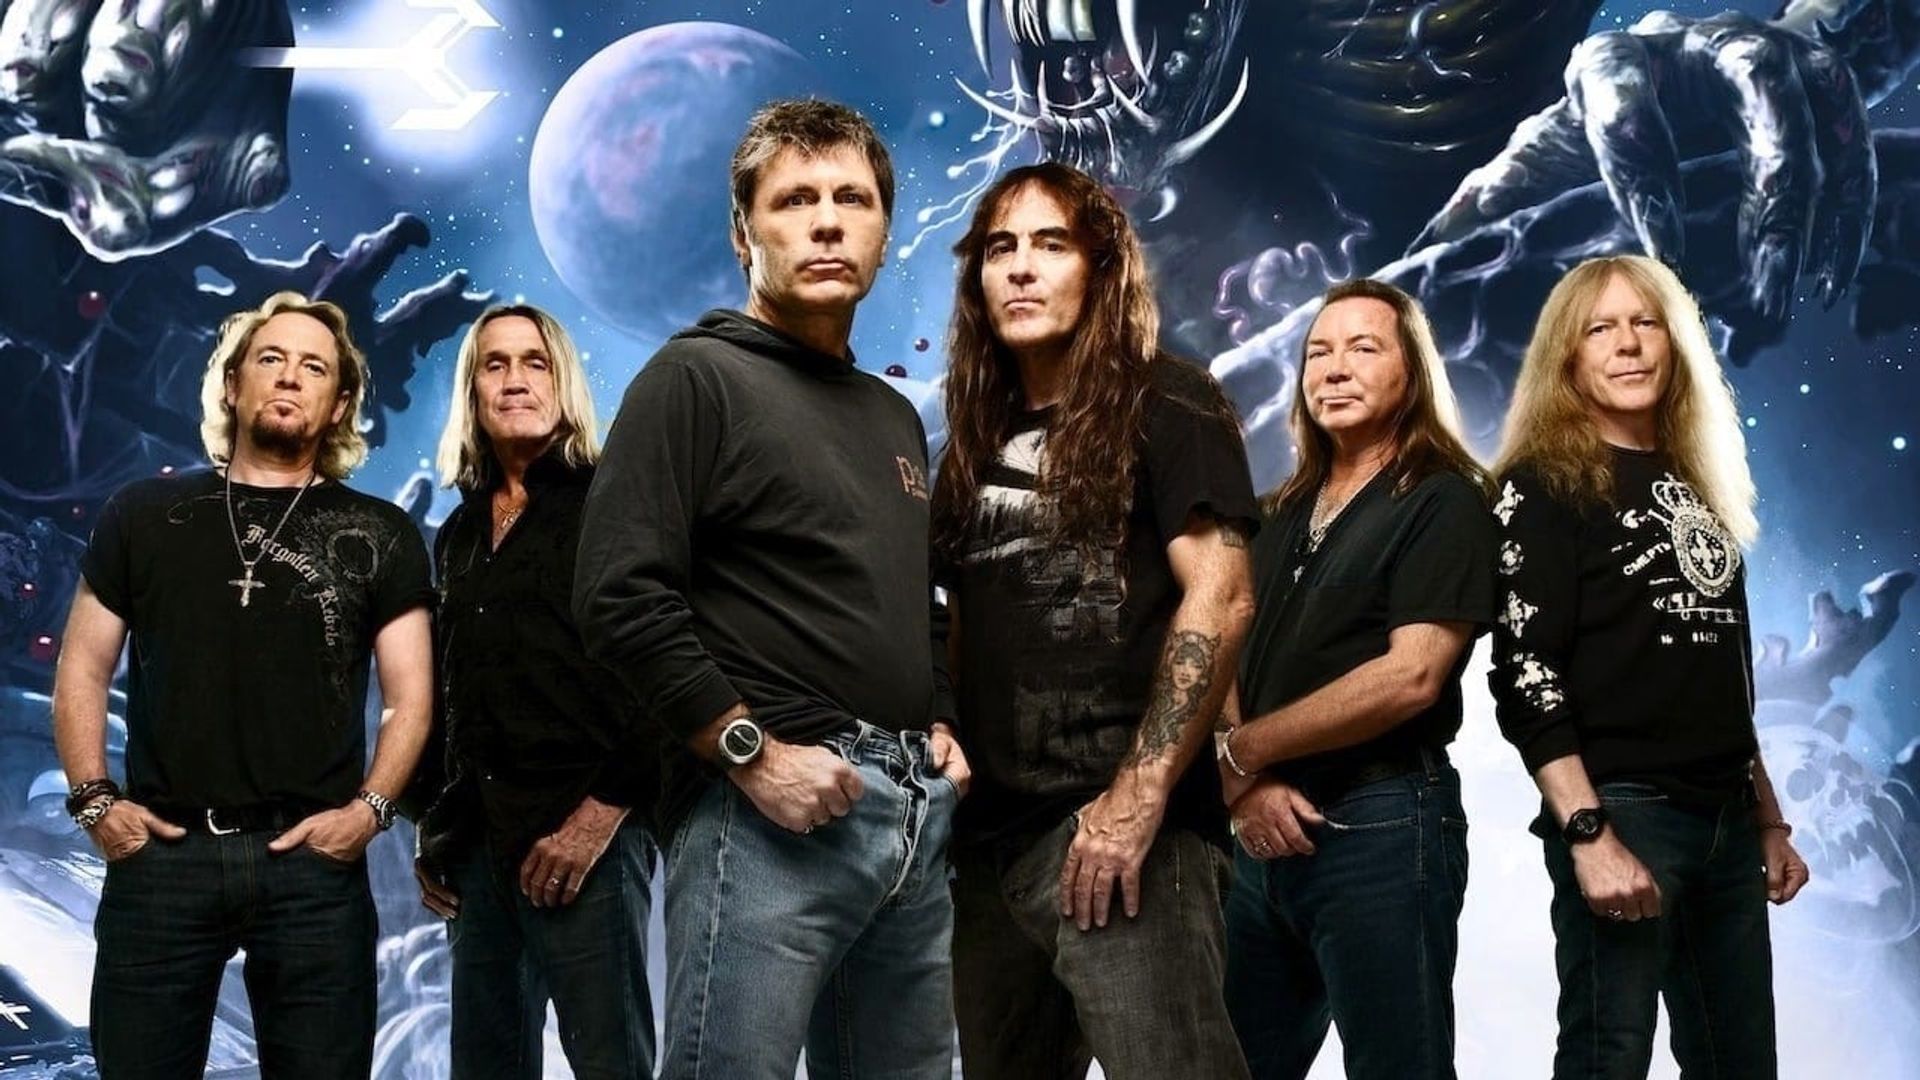 Iron Maiden: Raising Hell background